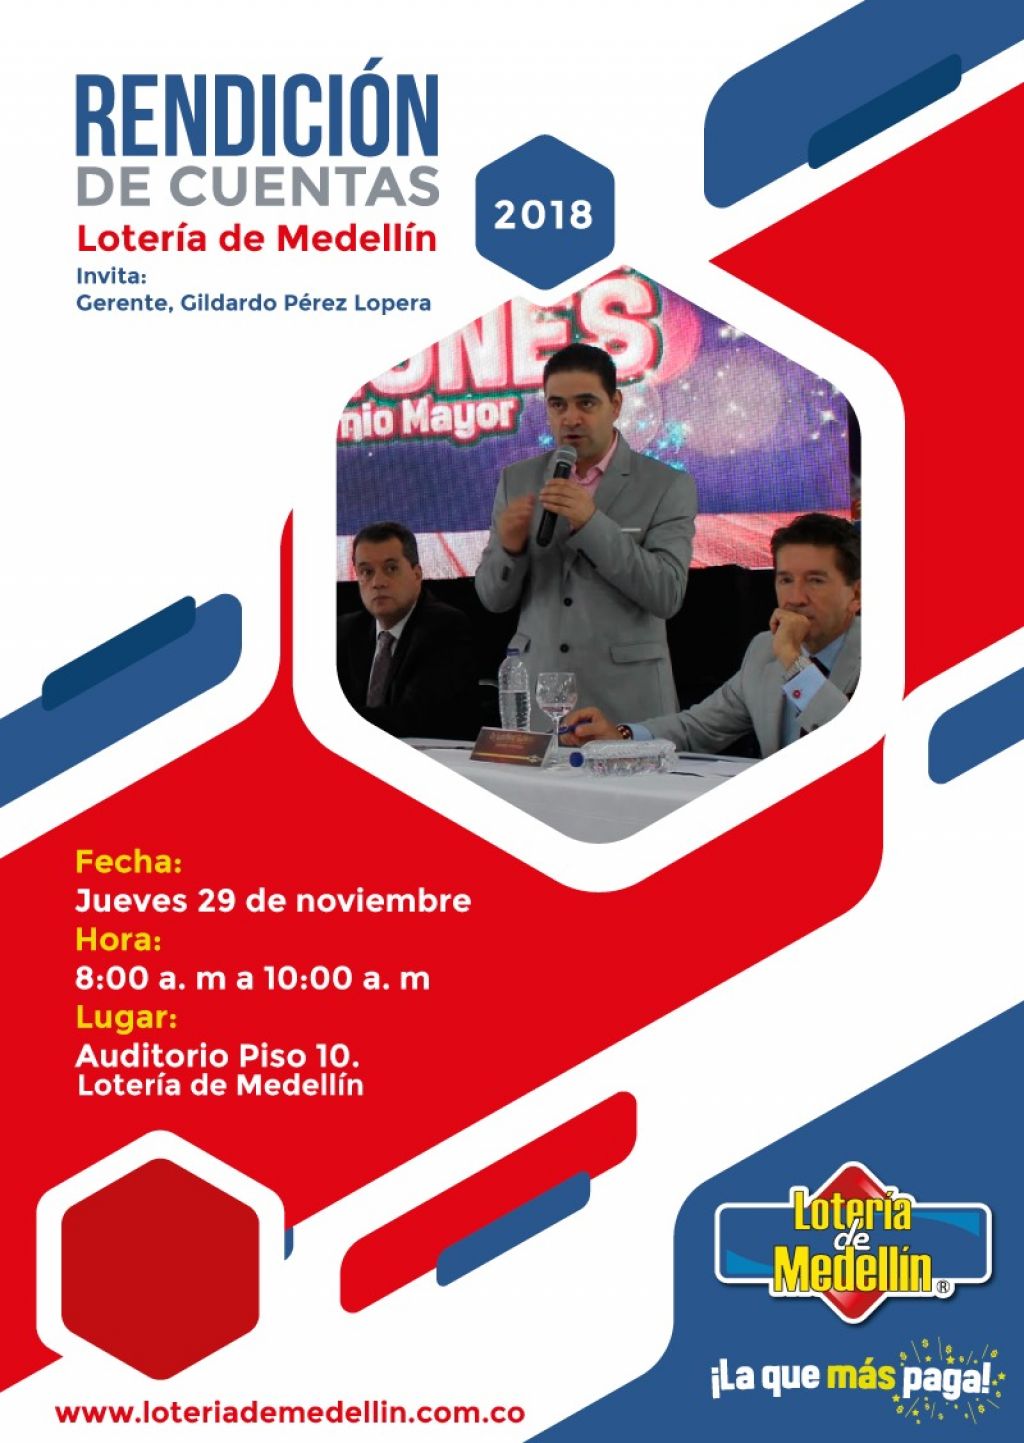 Gerente de Lotería de Medellín Gildardo Pérez Lopera, invita a la rendición de cuentas 2018